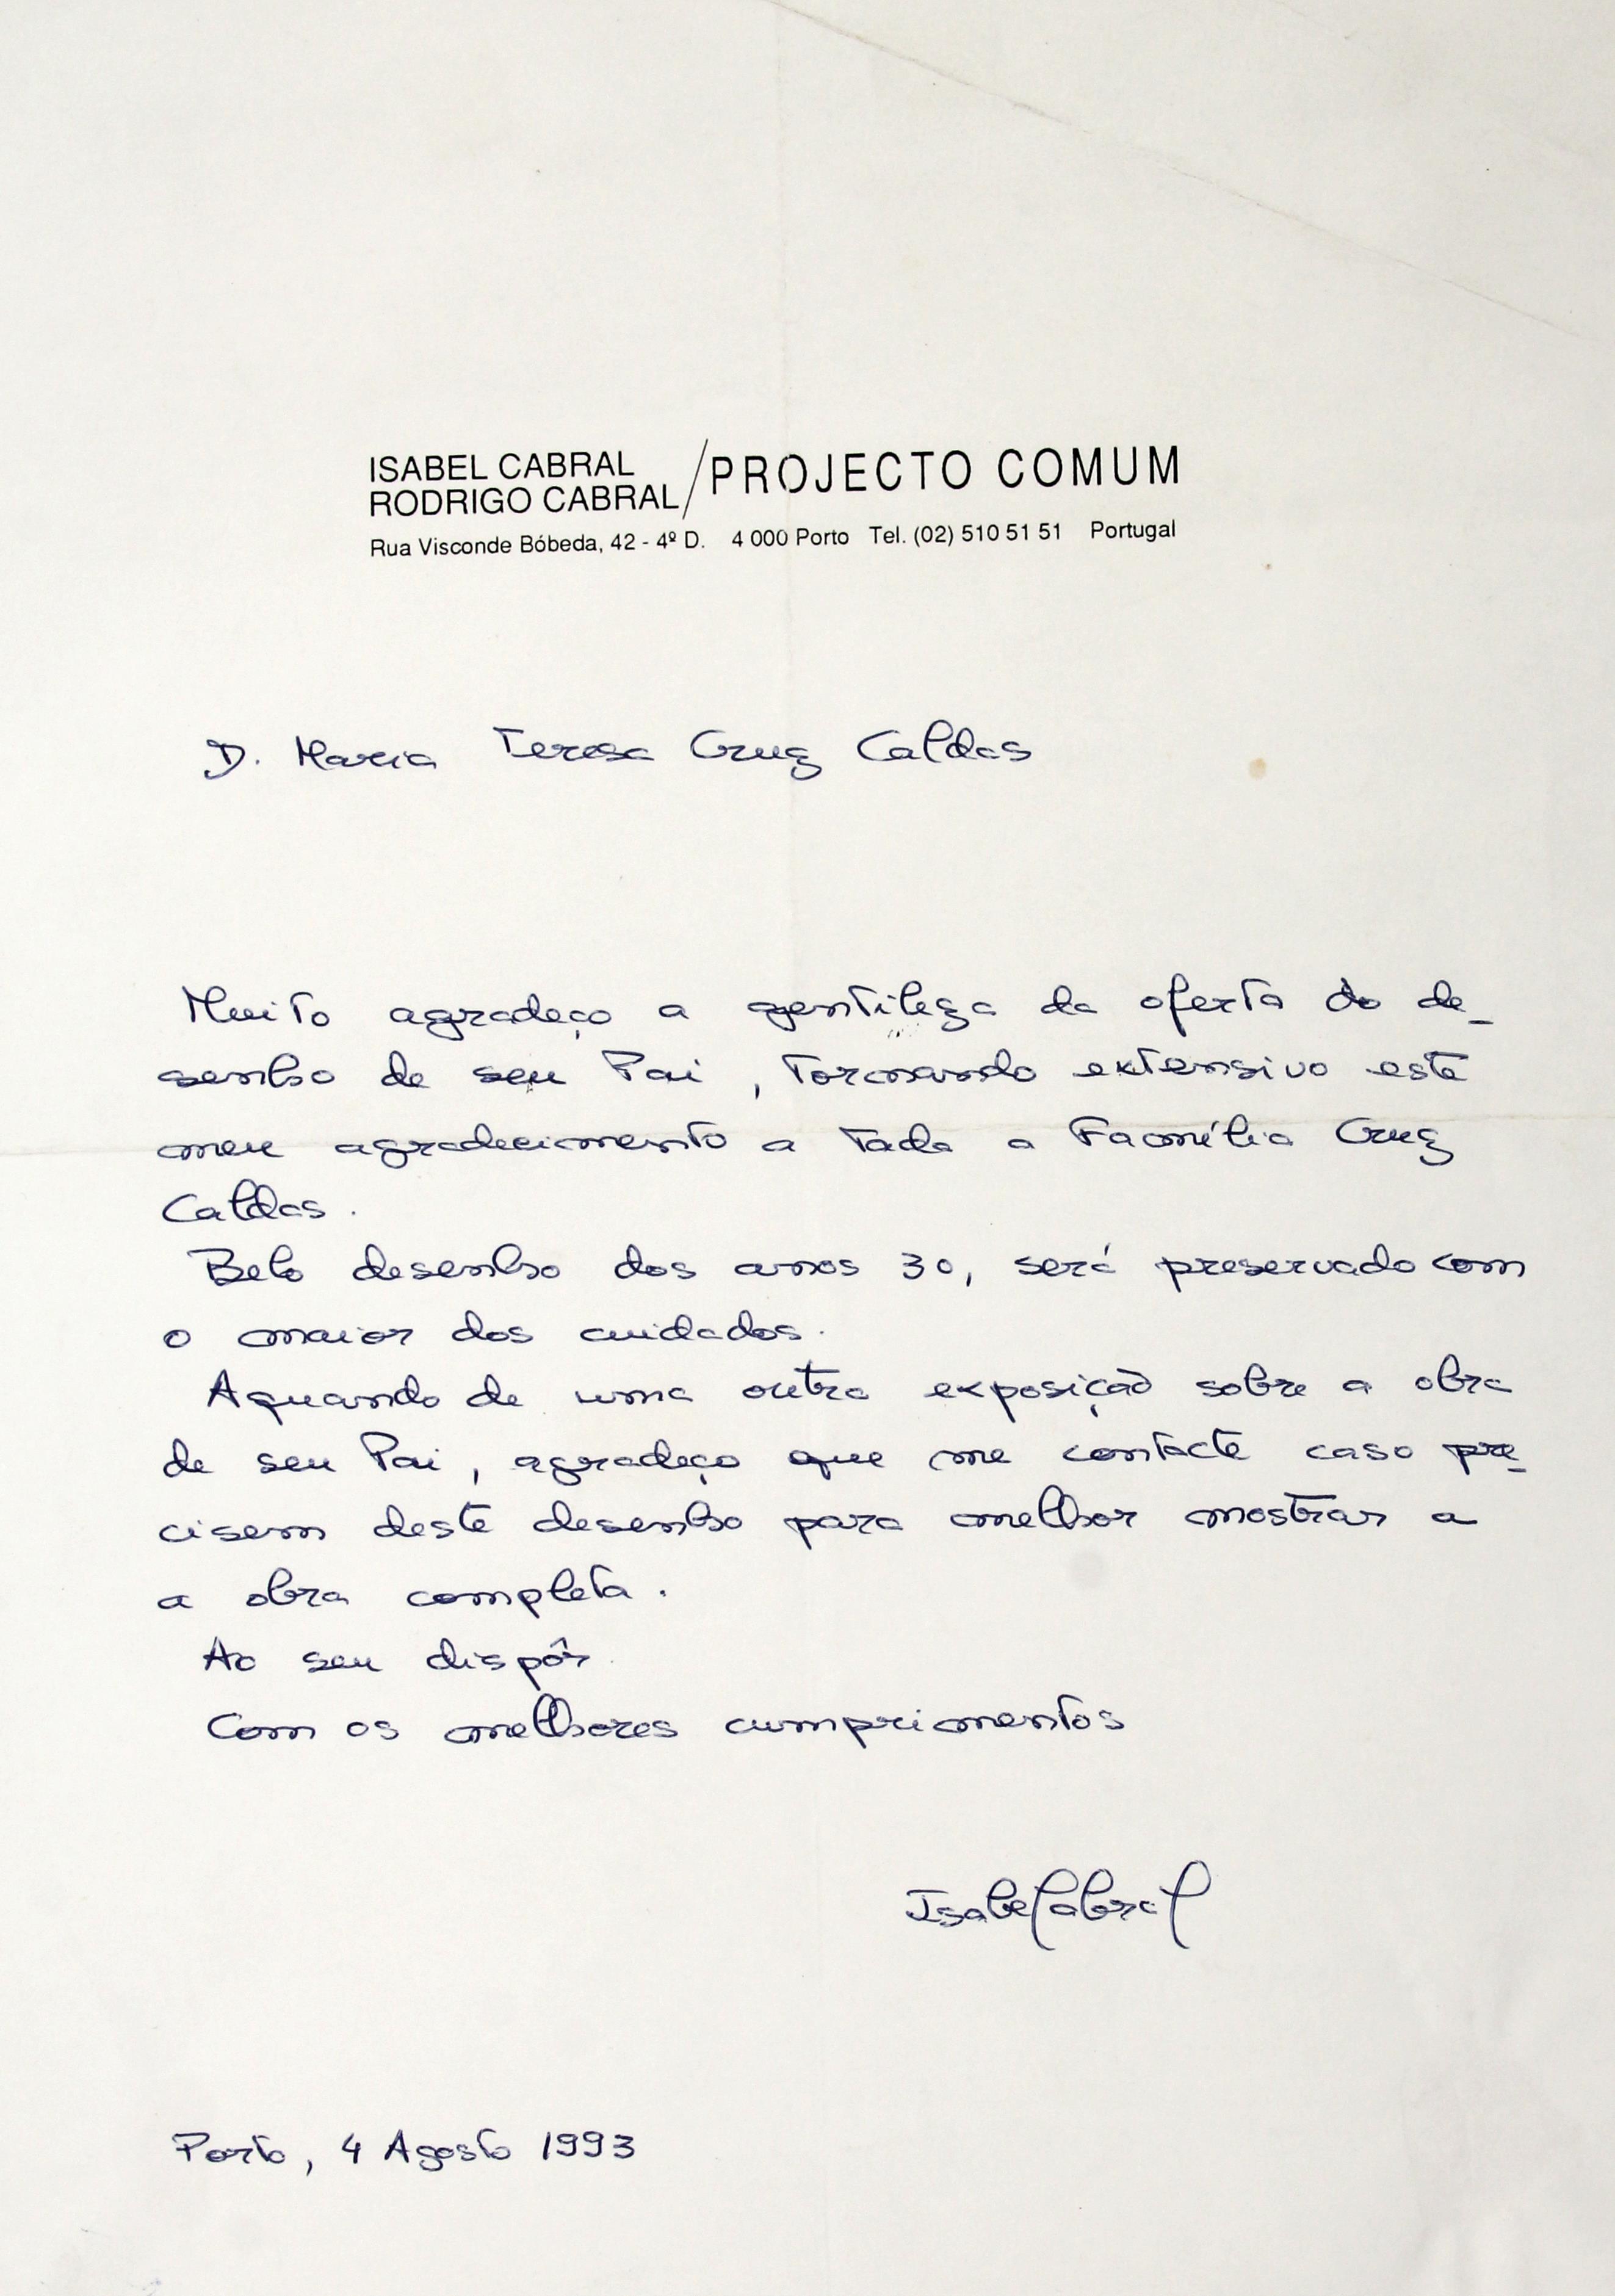 1ª Exposição "Documental" póstuma : "Uma Obra - Cruz Caldas" : [carta de Isabel Cabral a Maria Teresa Cruz Caldas]